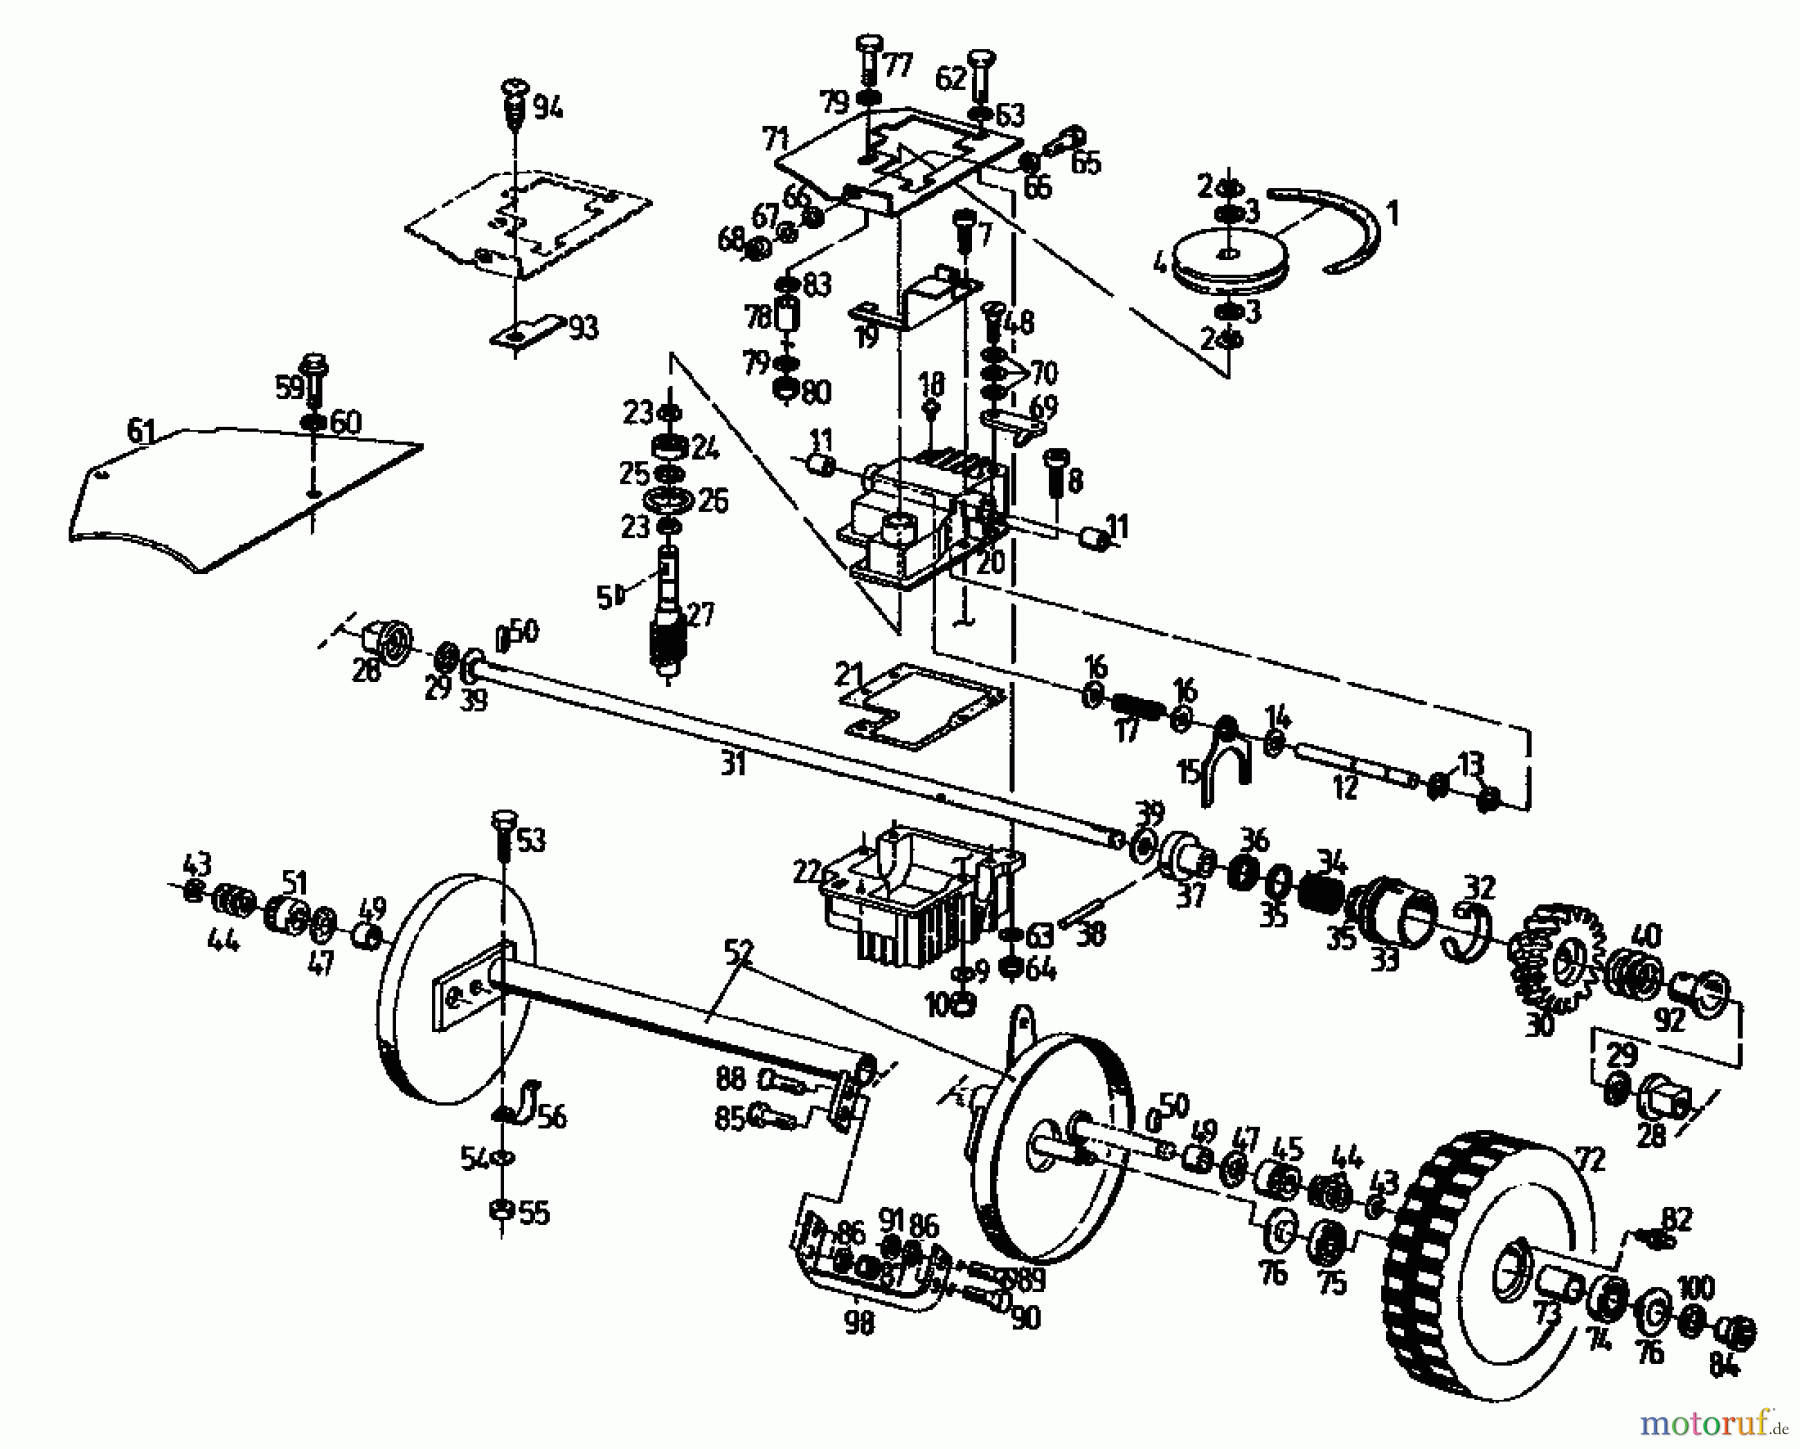  Gutbrod Motormäher mit Antrieb MH 534 PR 04017.03  (1993) Getriebe, Räder